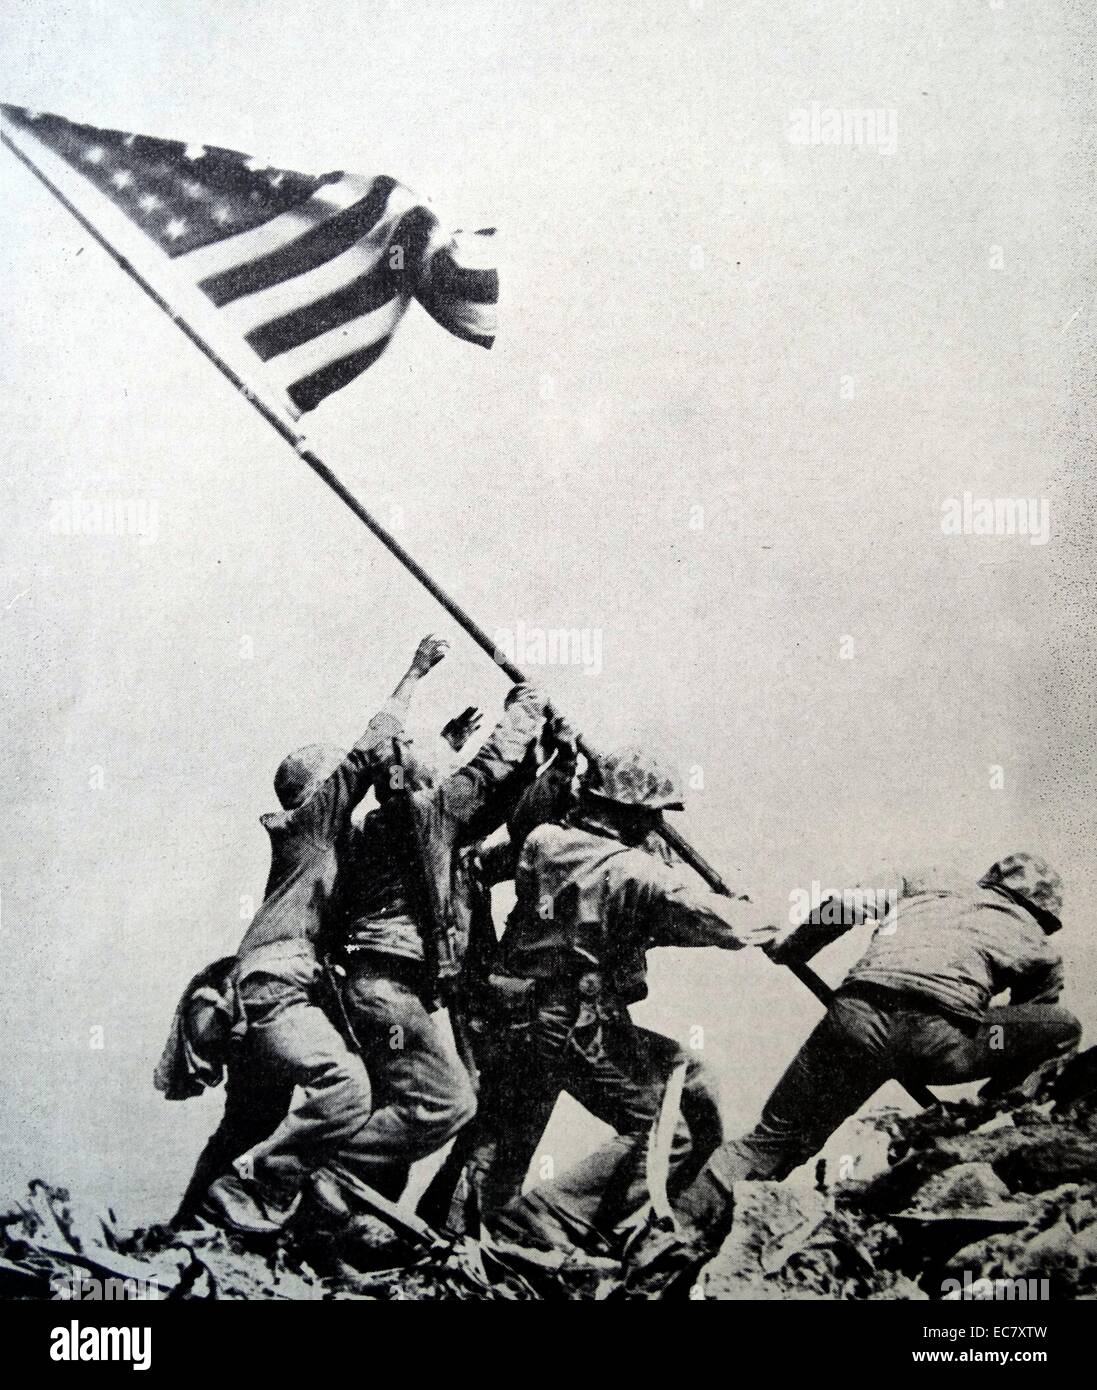 Alzando la bandera en Iwo Jima es una histórica fotografía tomada el 23 de febrero de 1945. Describe cinco Marines estadounidenses y un ayudante médico de la Marina estadounidense elevando a nosotros en la cima de Monte Suribachi planas, durante la batalla de Iwo Jima en WW2. Foto de stock